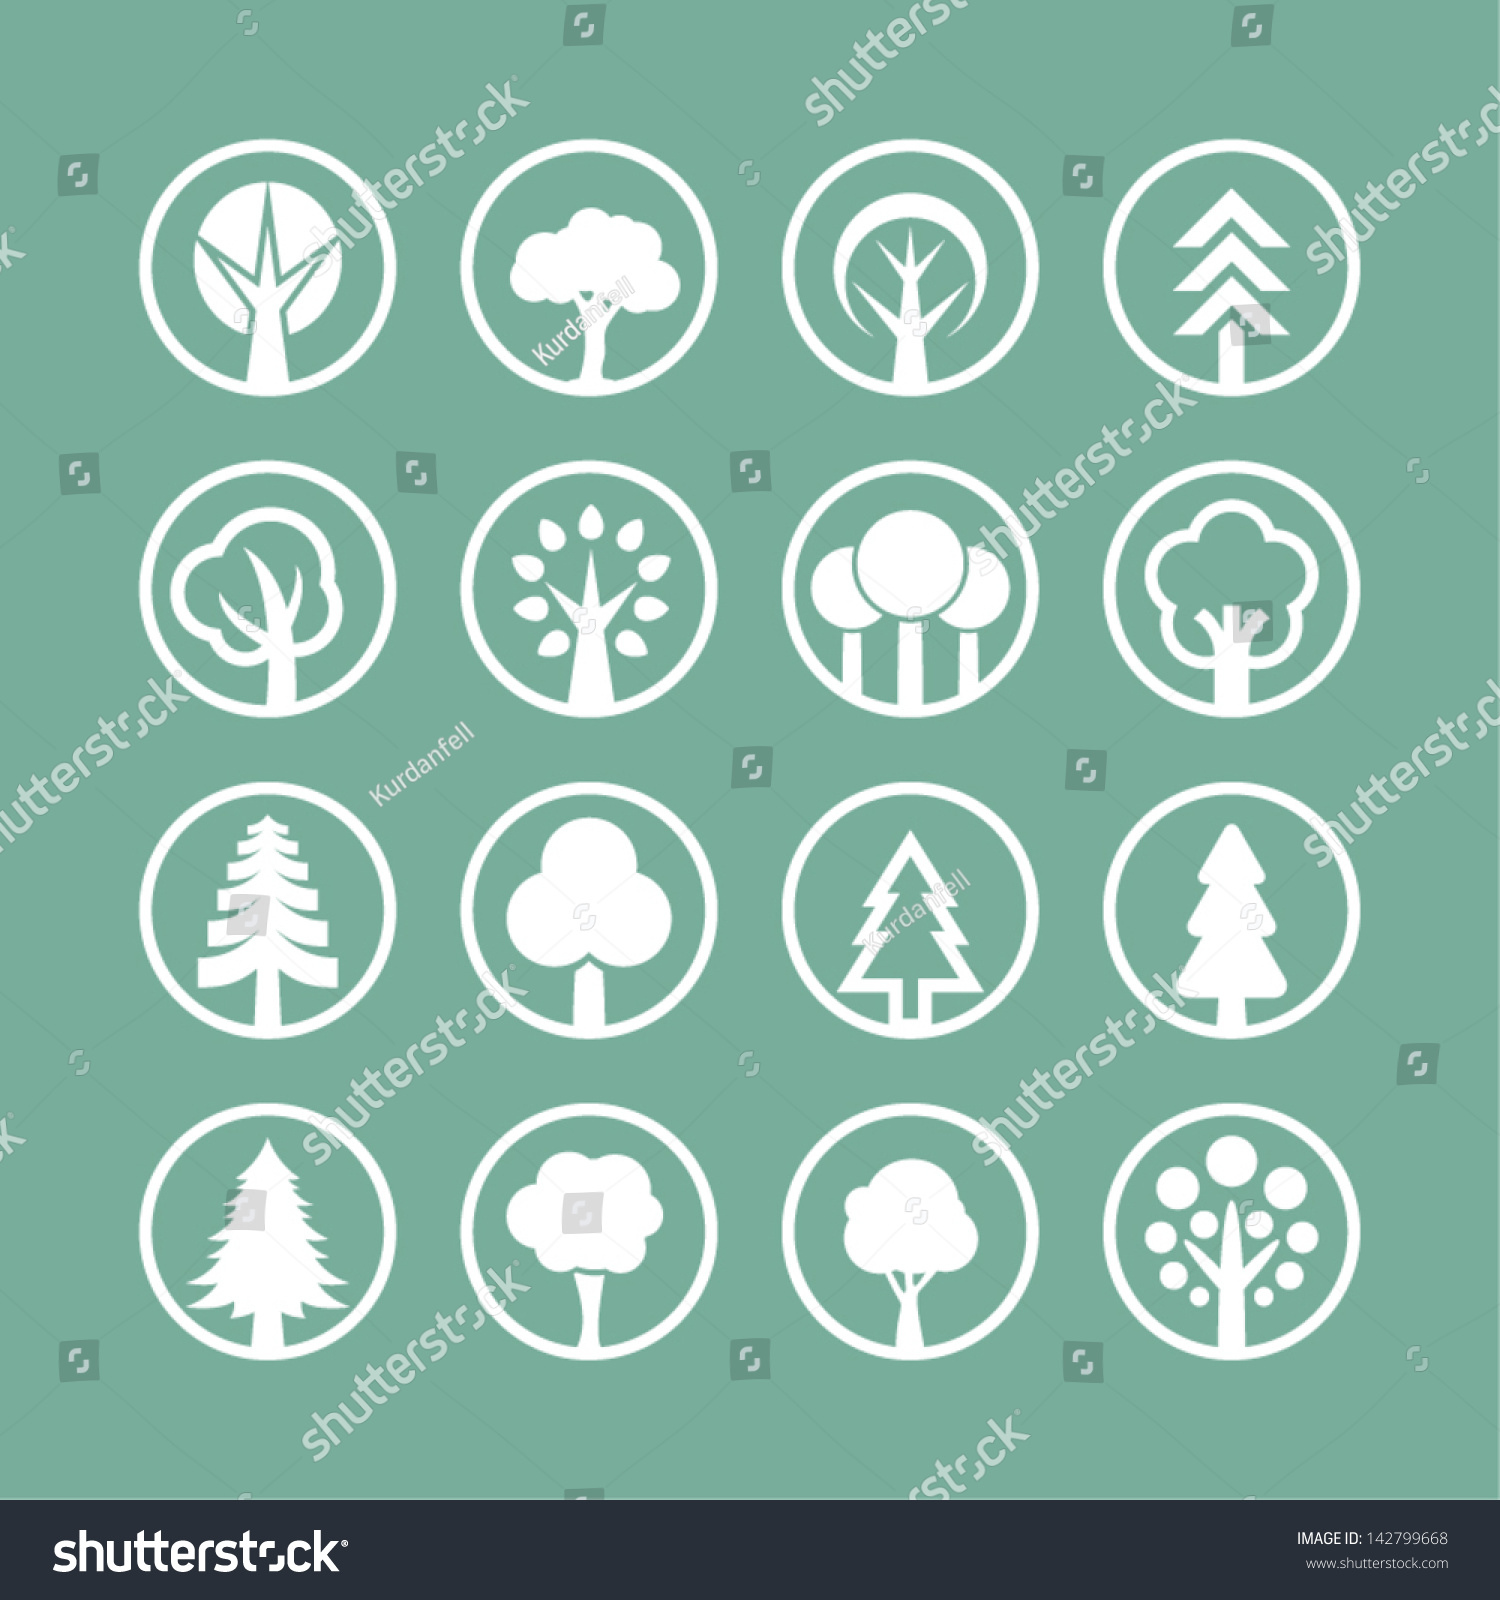 Tree icons #142799668